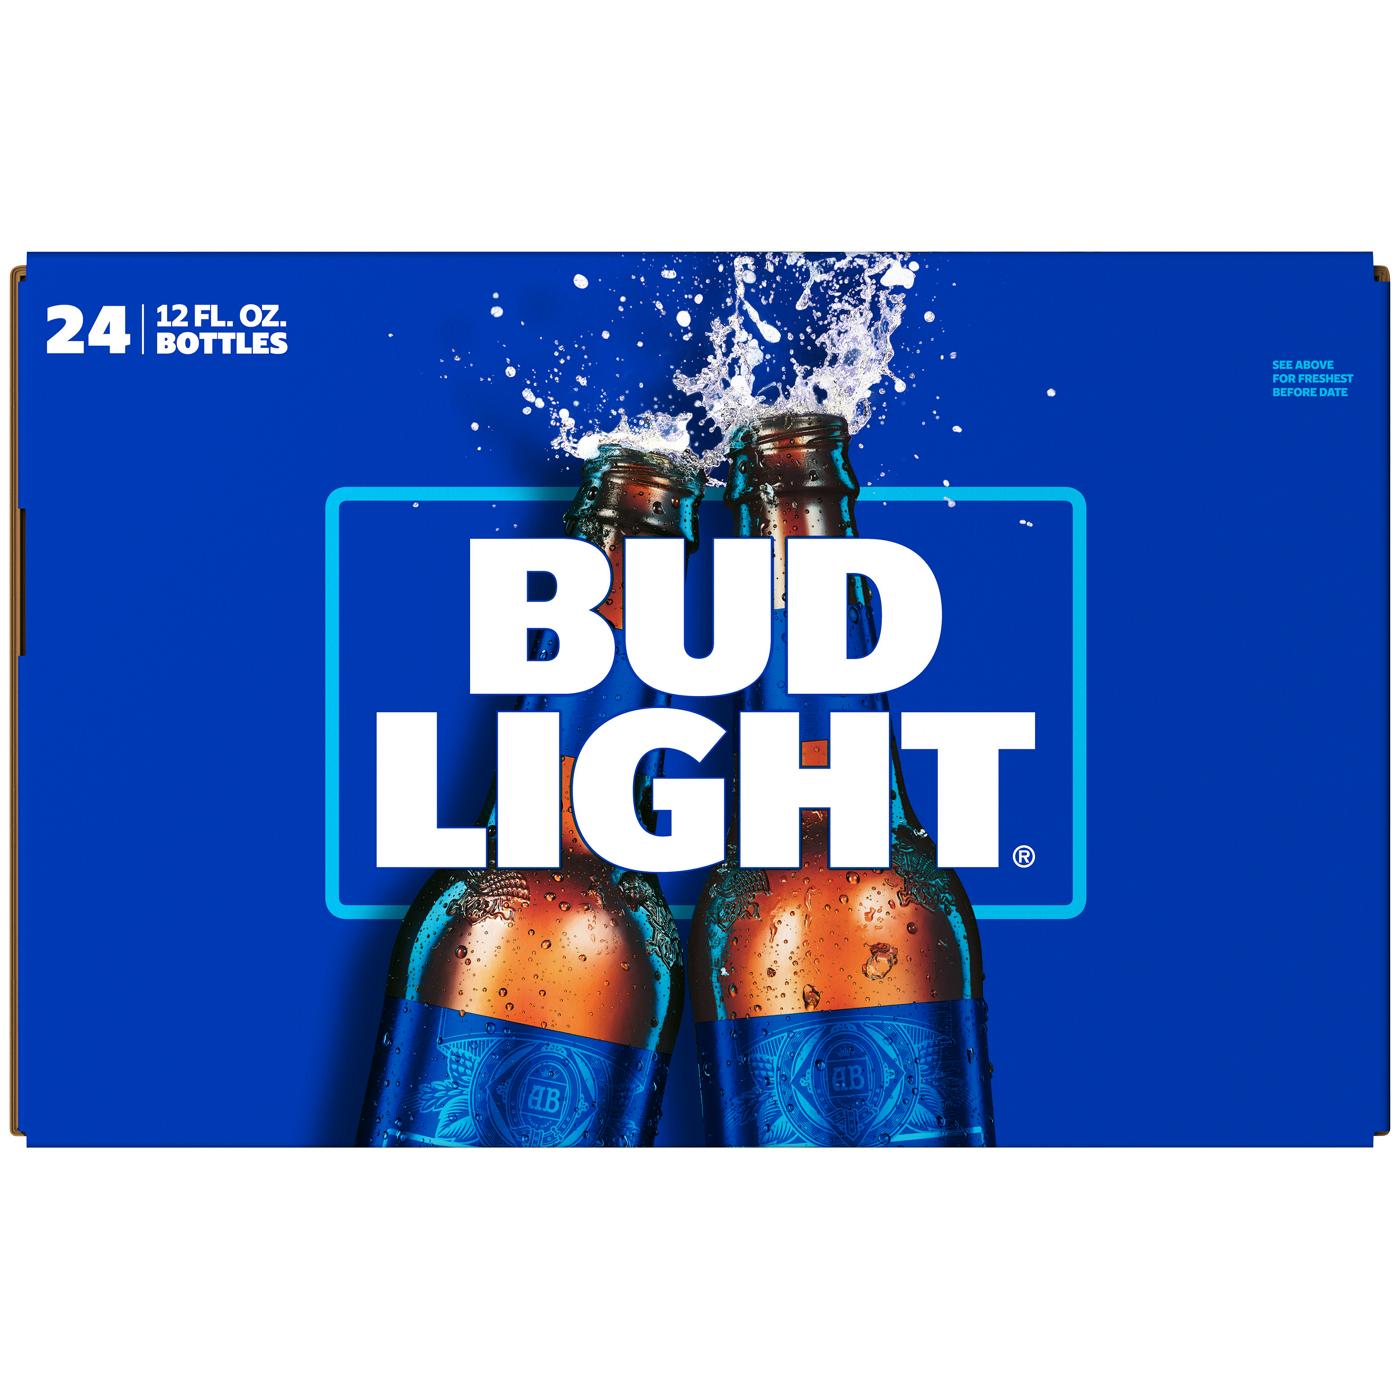 Bud Light Beer 12 oz Bottles; image 2 of 2